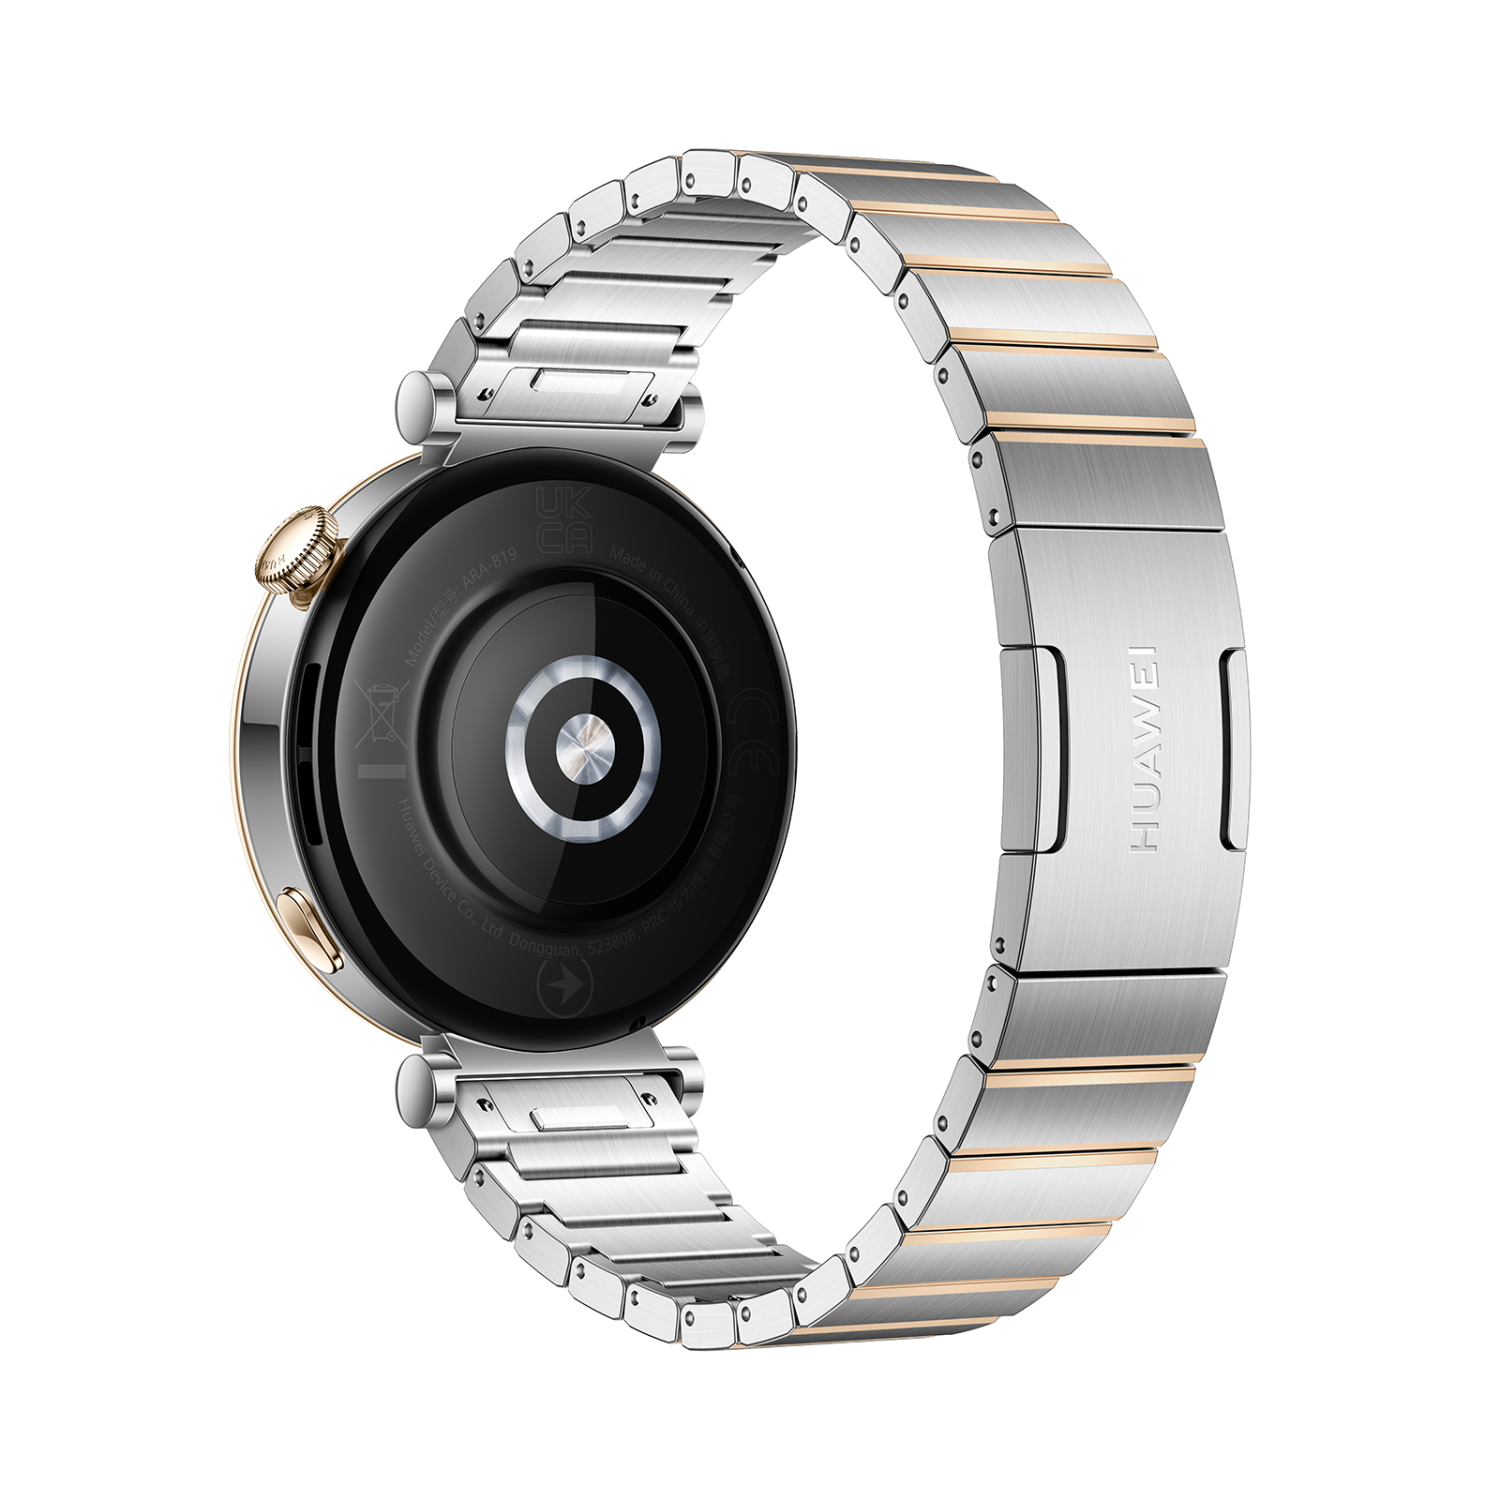 Huawei Watch GT4 41mm nerezová ocel